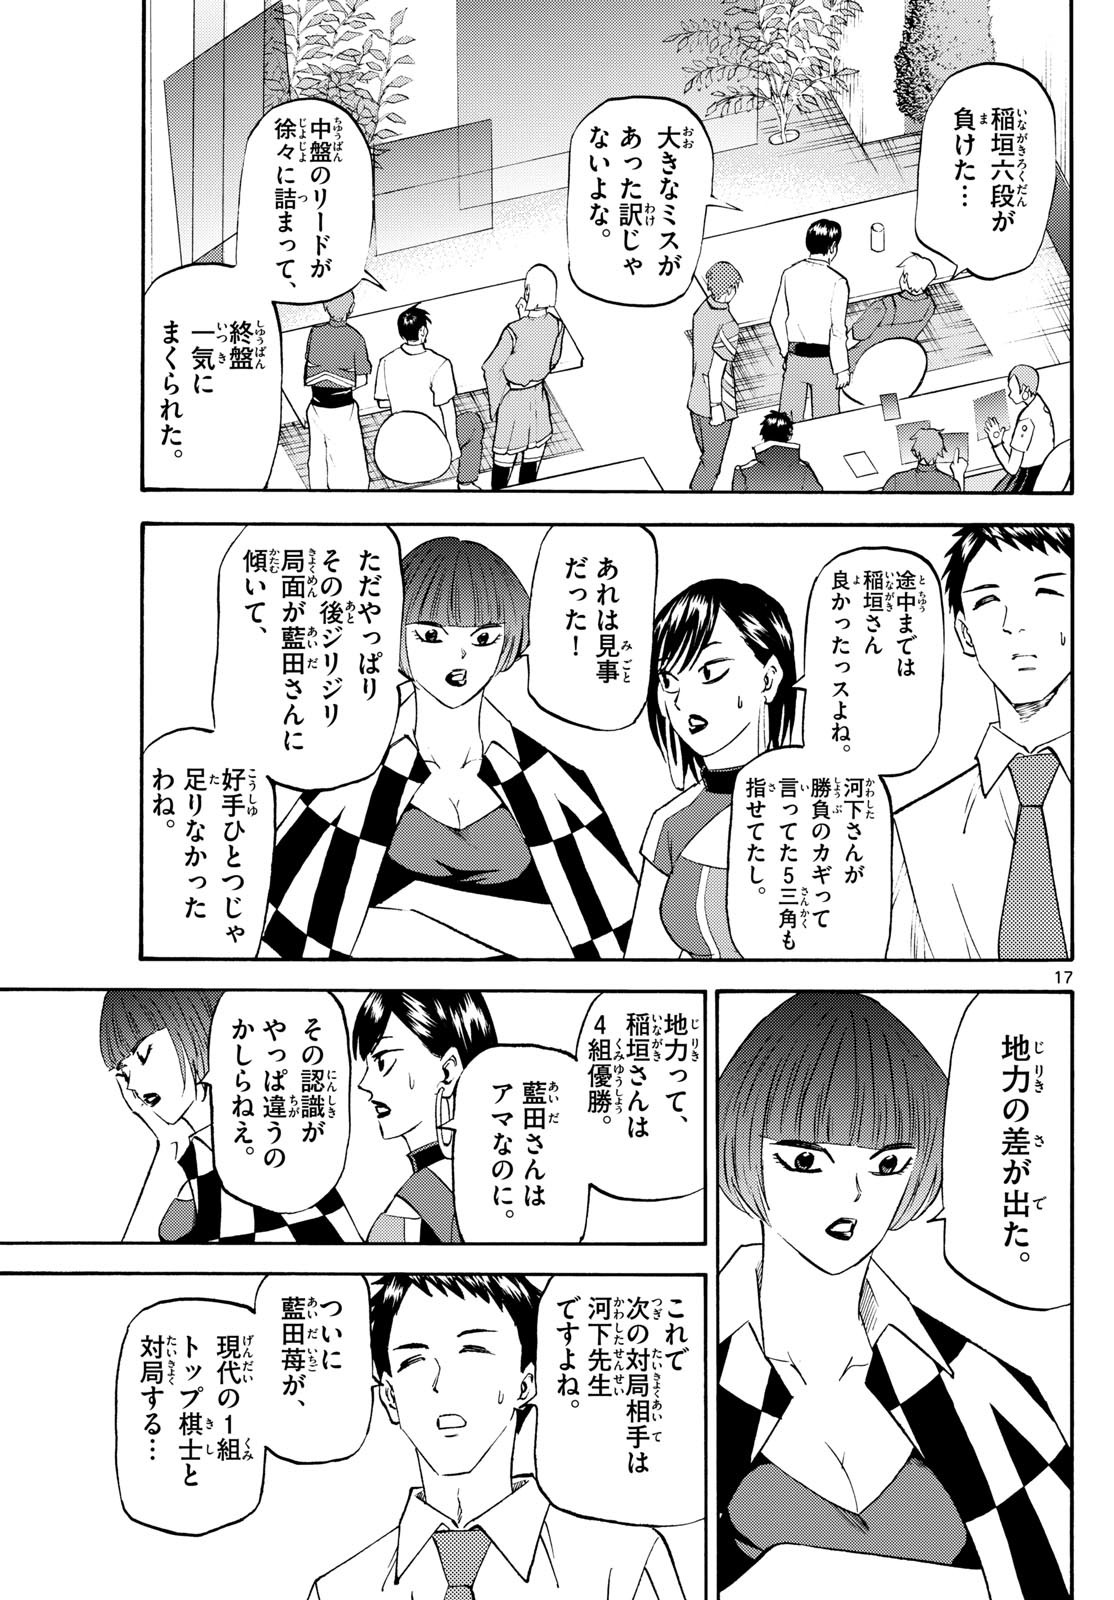 Ryu-to-Ichigo - Chapter 198 - Page 17